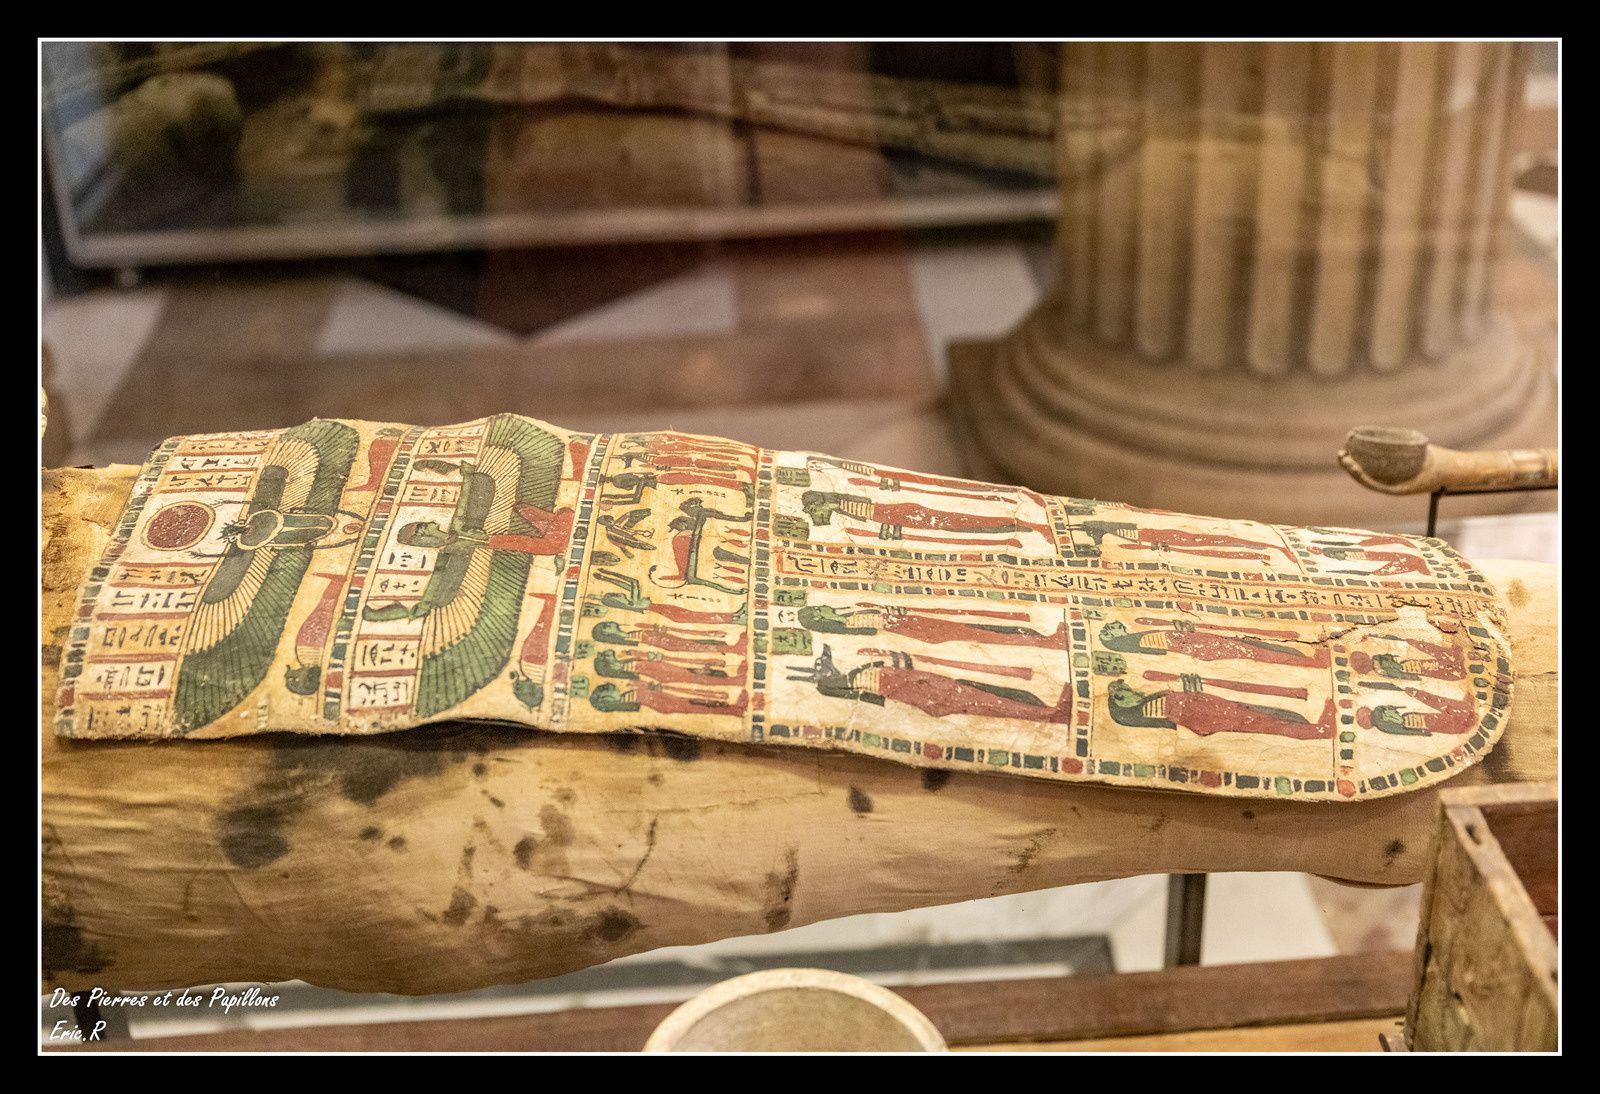 Présentation d'une momie dans son linceul peint, époque Ptolémaïque.